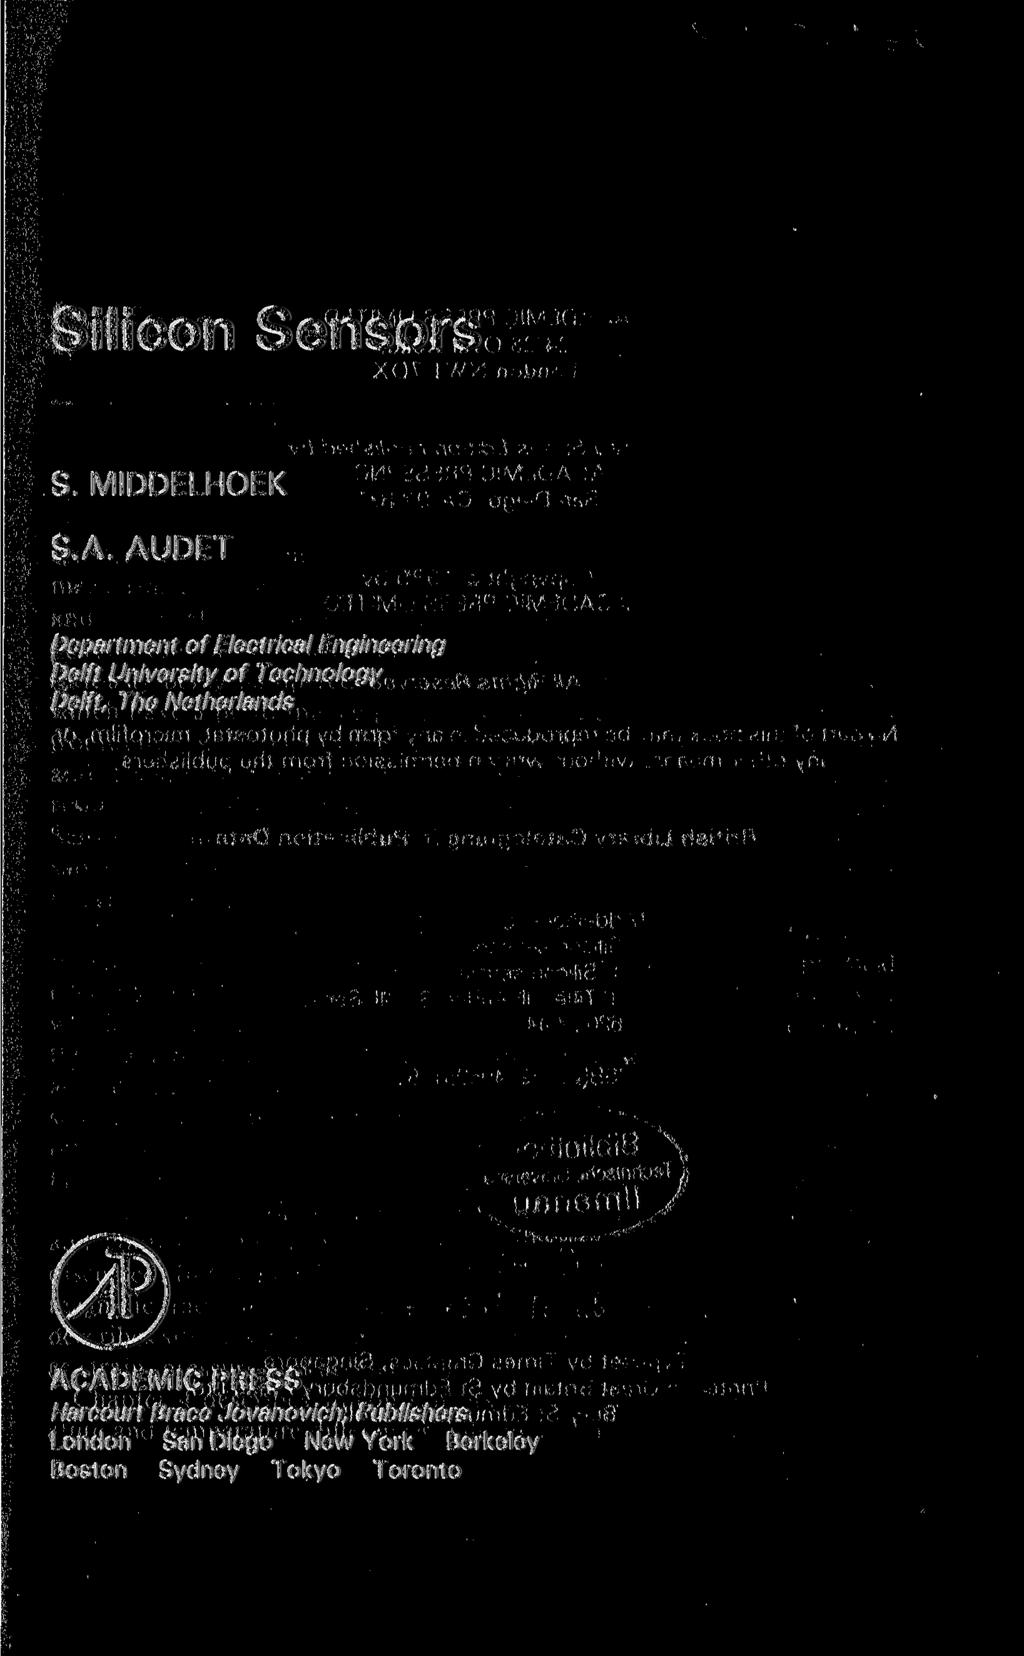 Silicon Sensors S. MIDDELHOEK S.A.